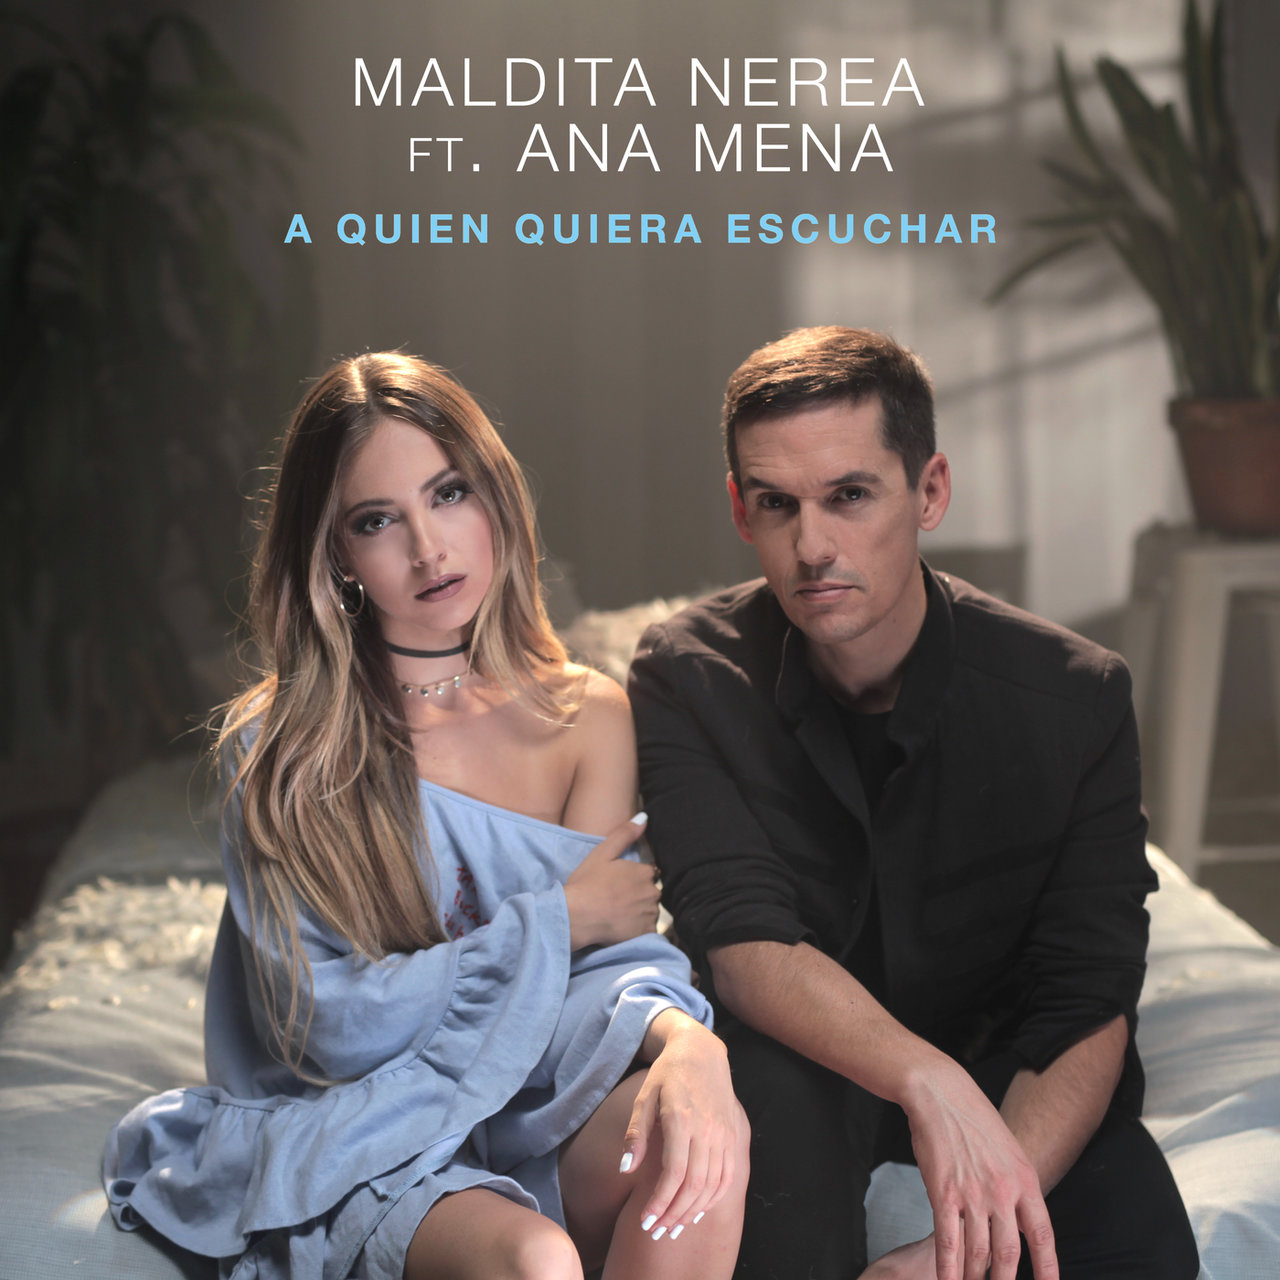 Maldita Nerea featuring Ana Mena — A Quien Quiera Escuchar cover artwork